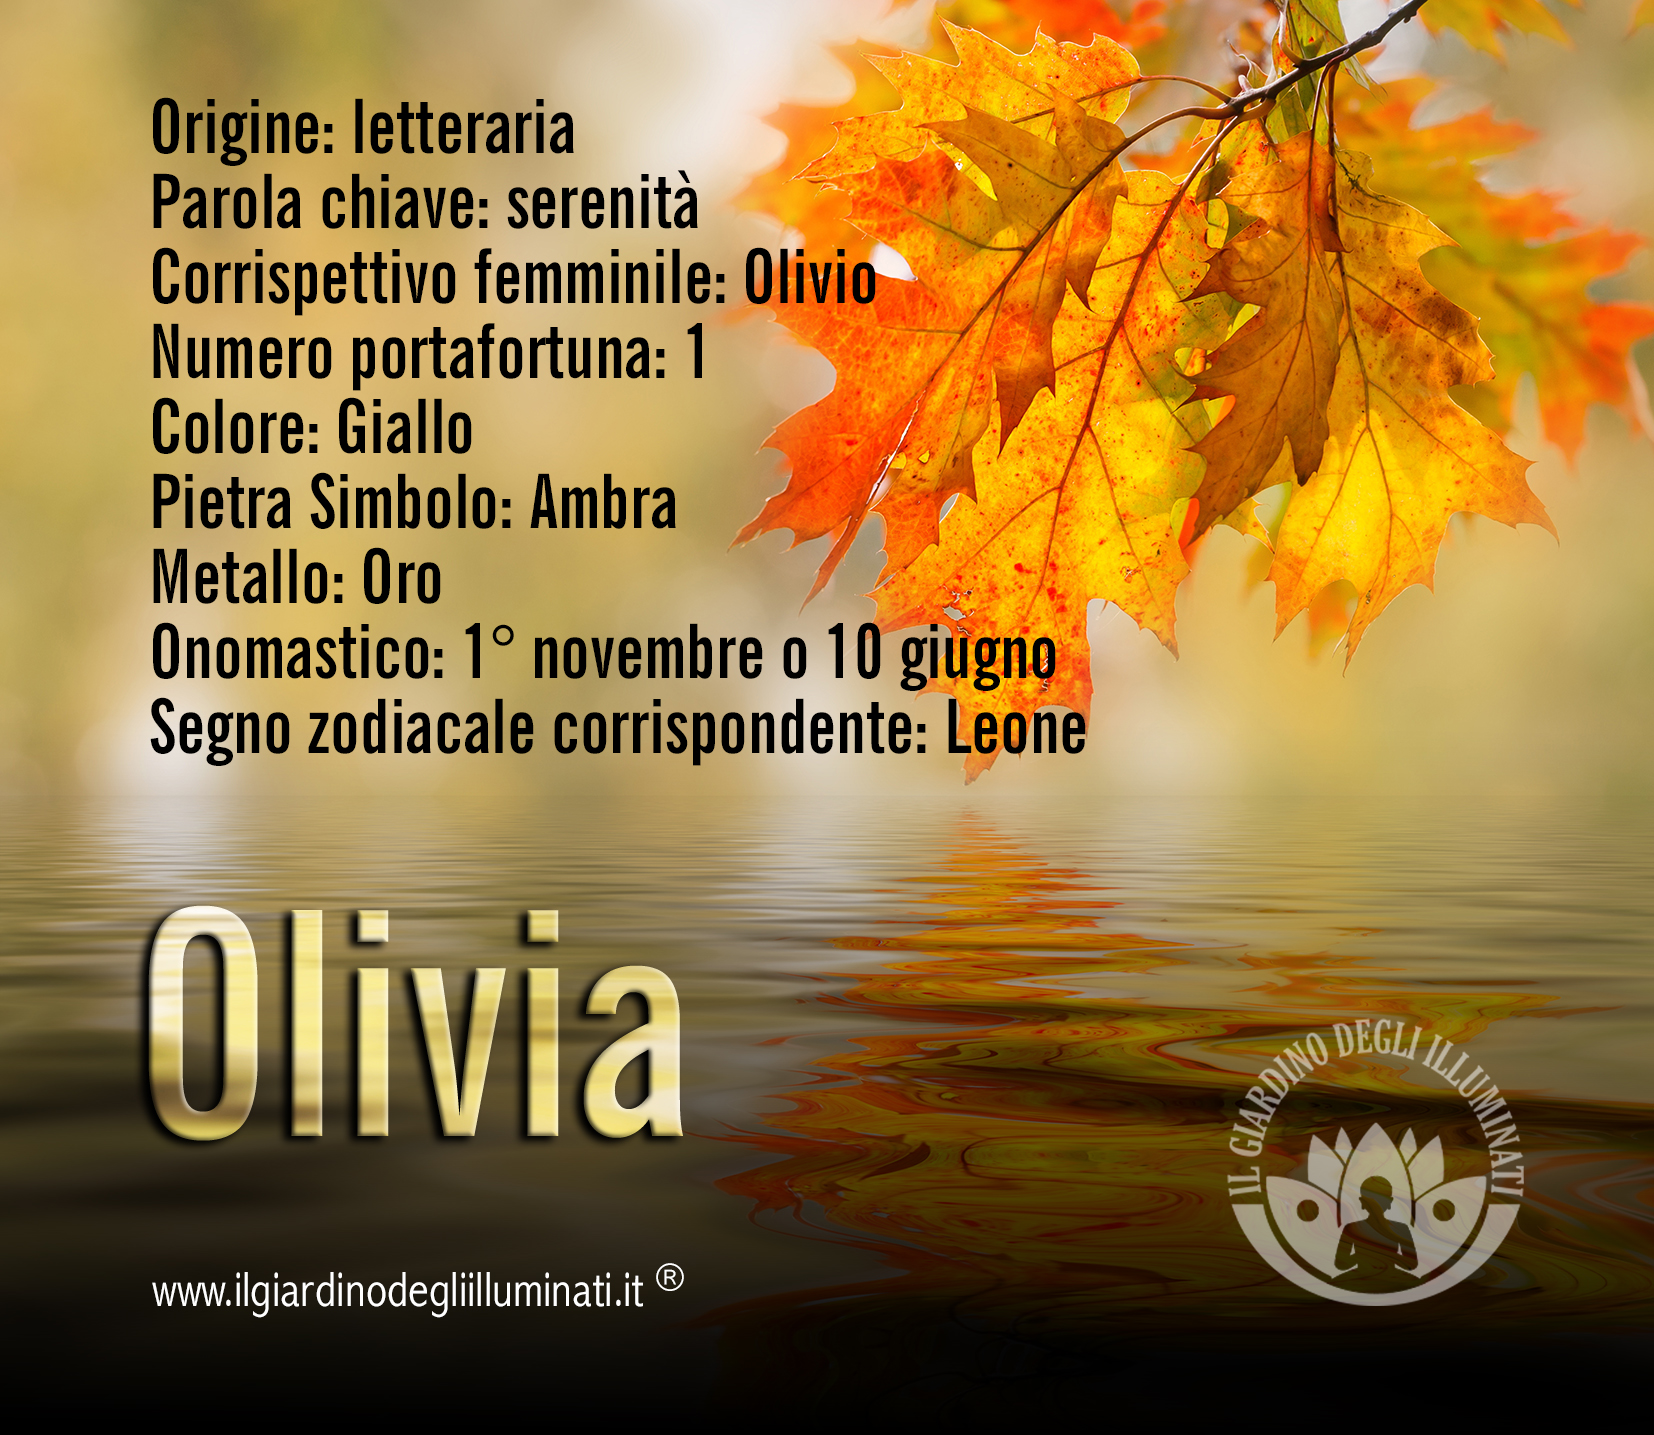 Olivia significato e origine